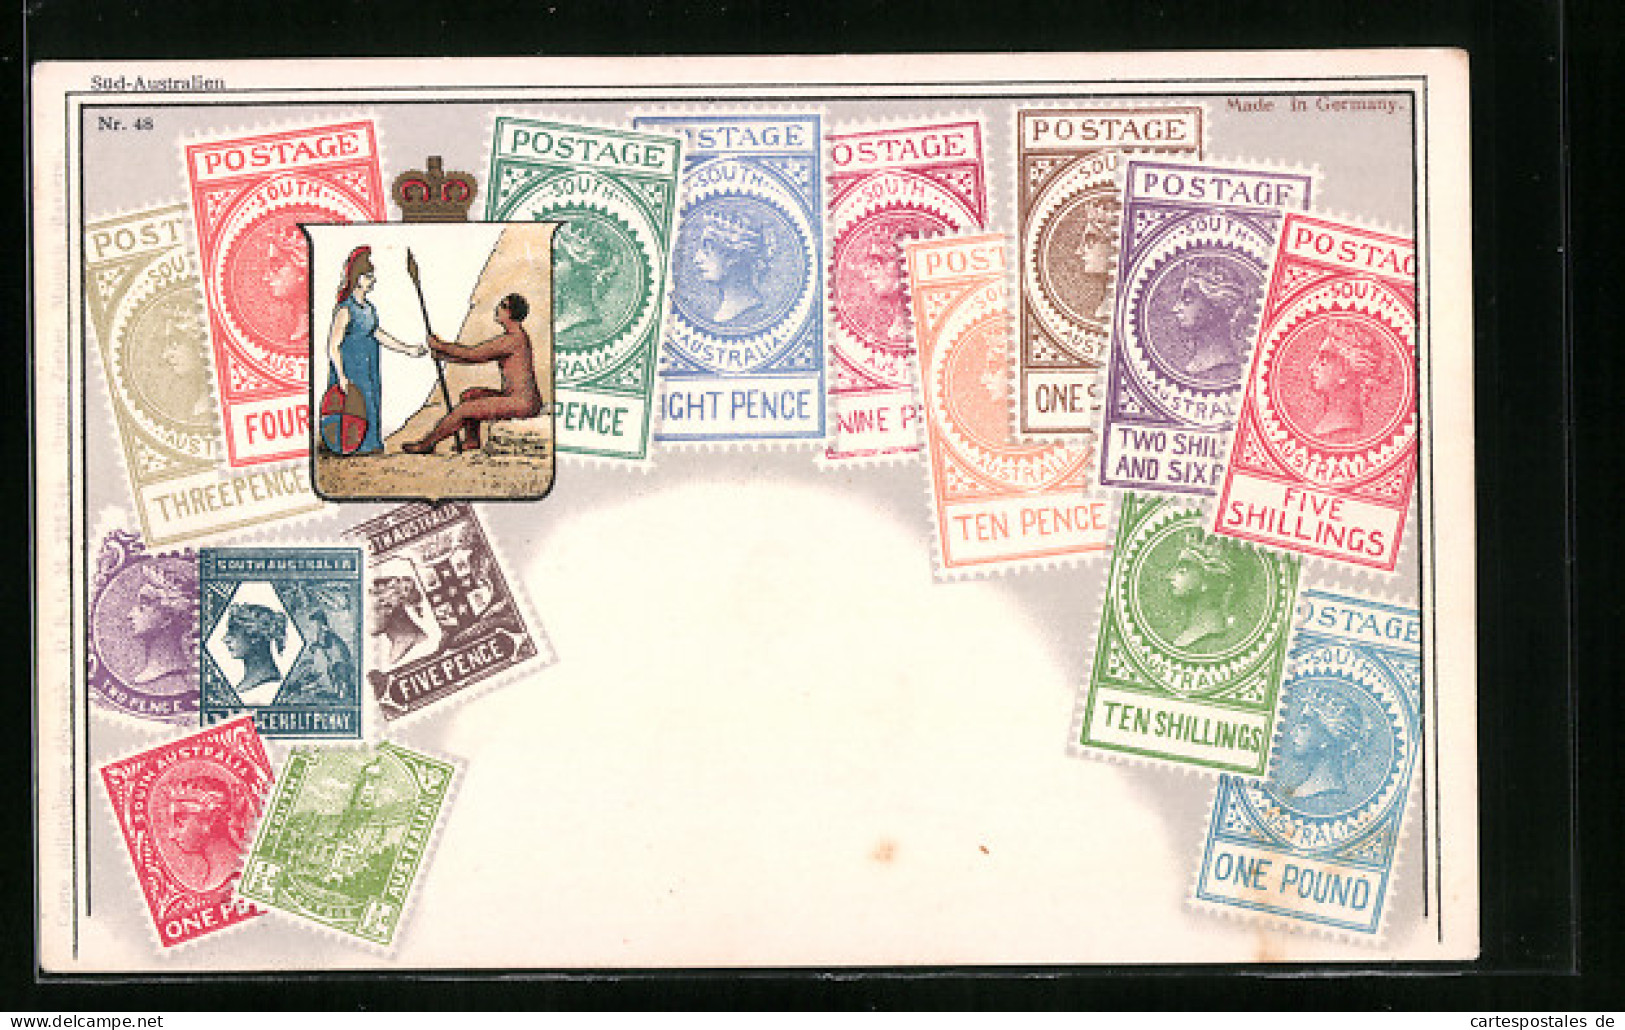 AK Briefmarken Mit Wappen Von Süd-Australien  - Stamps (pictures)